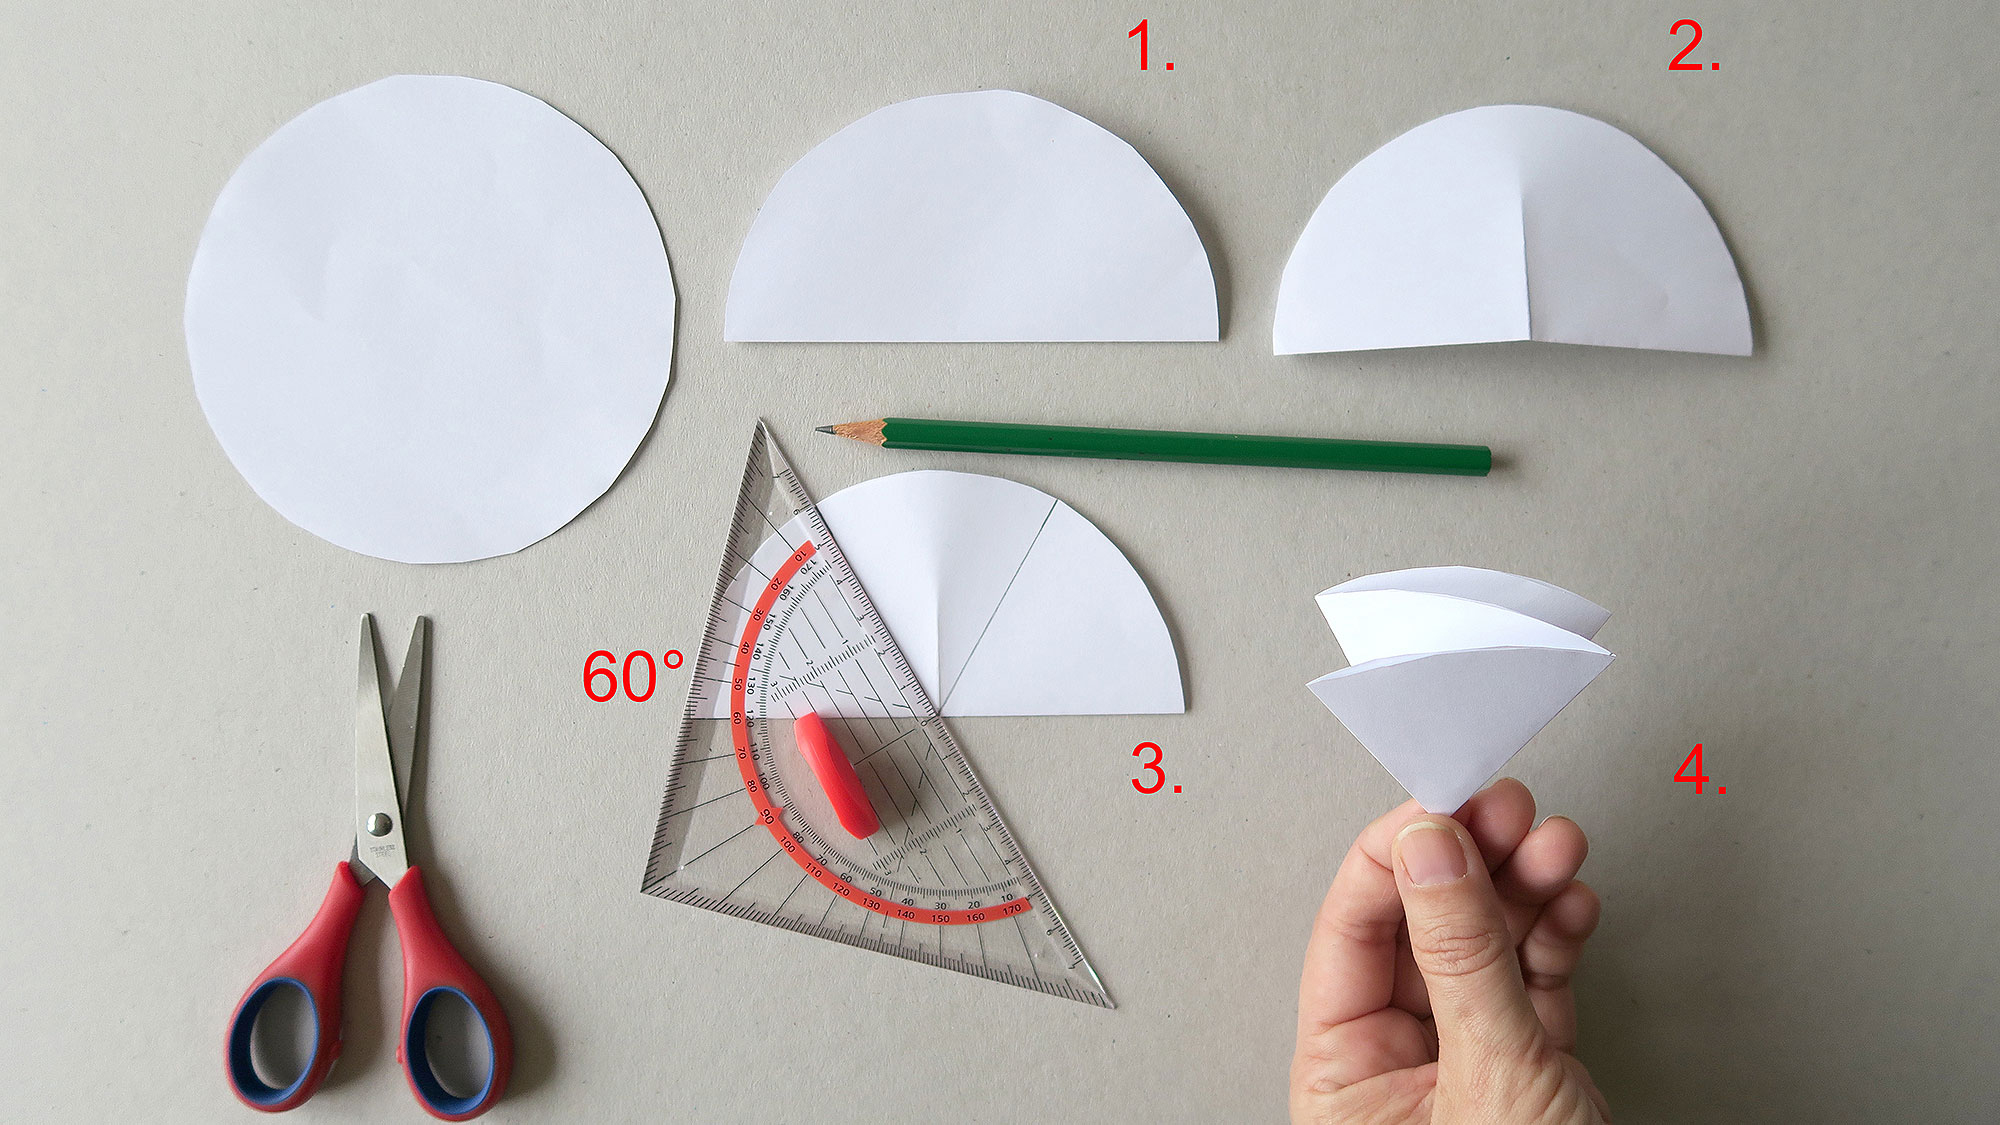 Scherenschnitt In 3D - Eine Einfache Schneeflocke | Famigros in Scherenschnitt Schneeflocke Anleitung